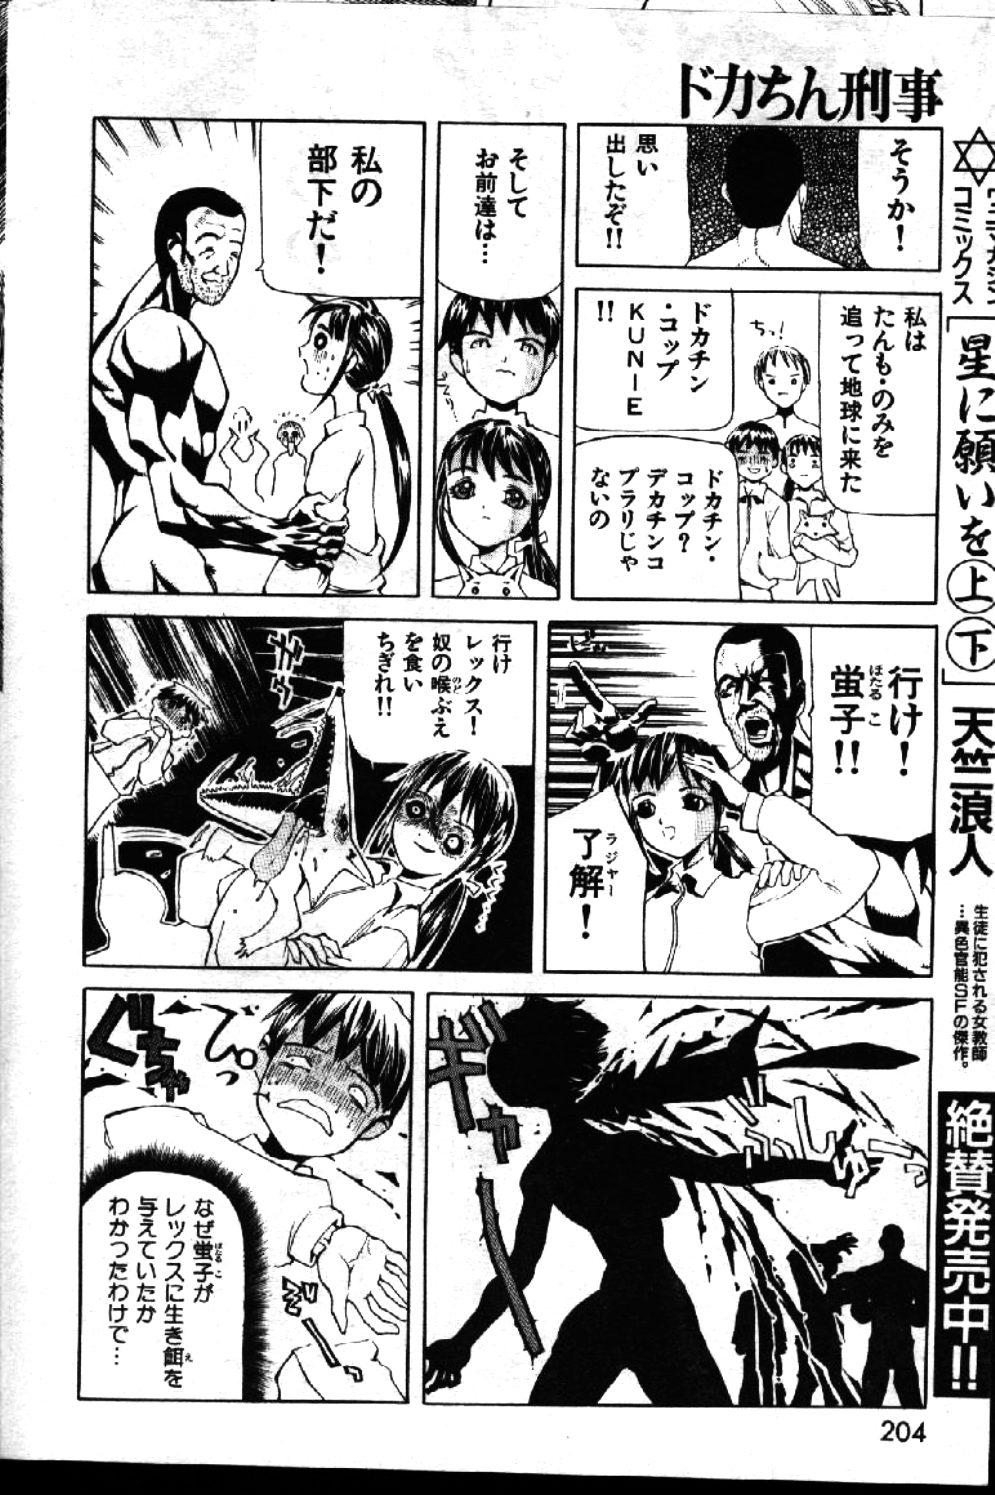 COMIC GEKIMAN 1999-01 Vol. 19 155